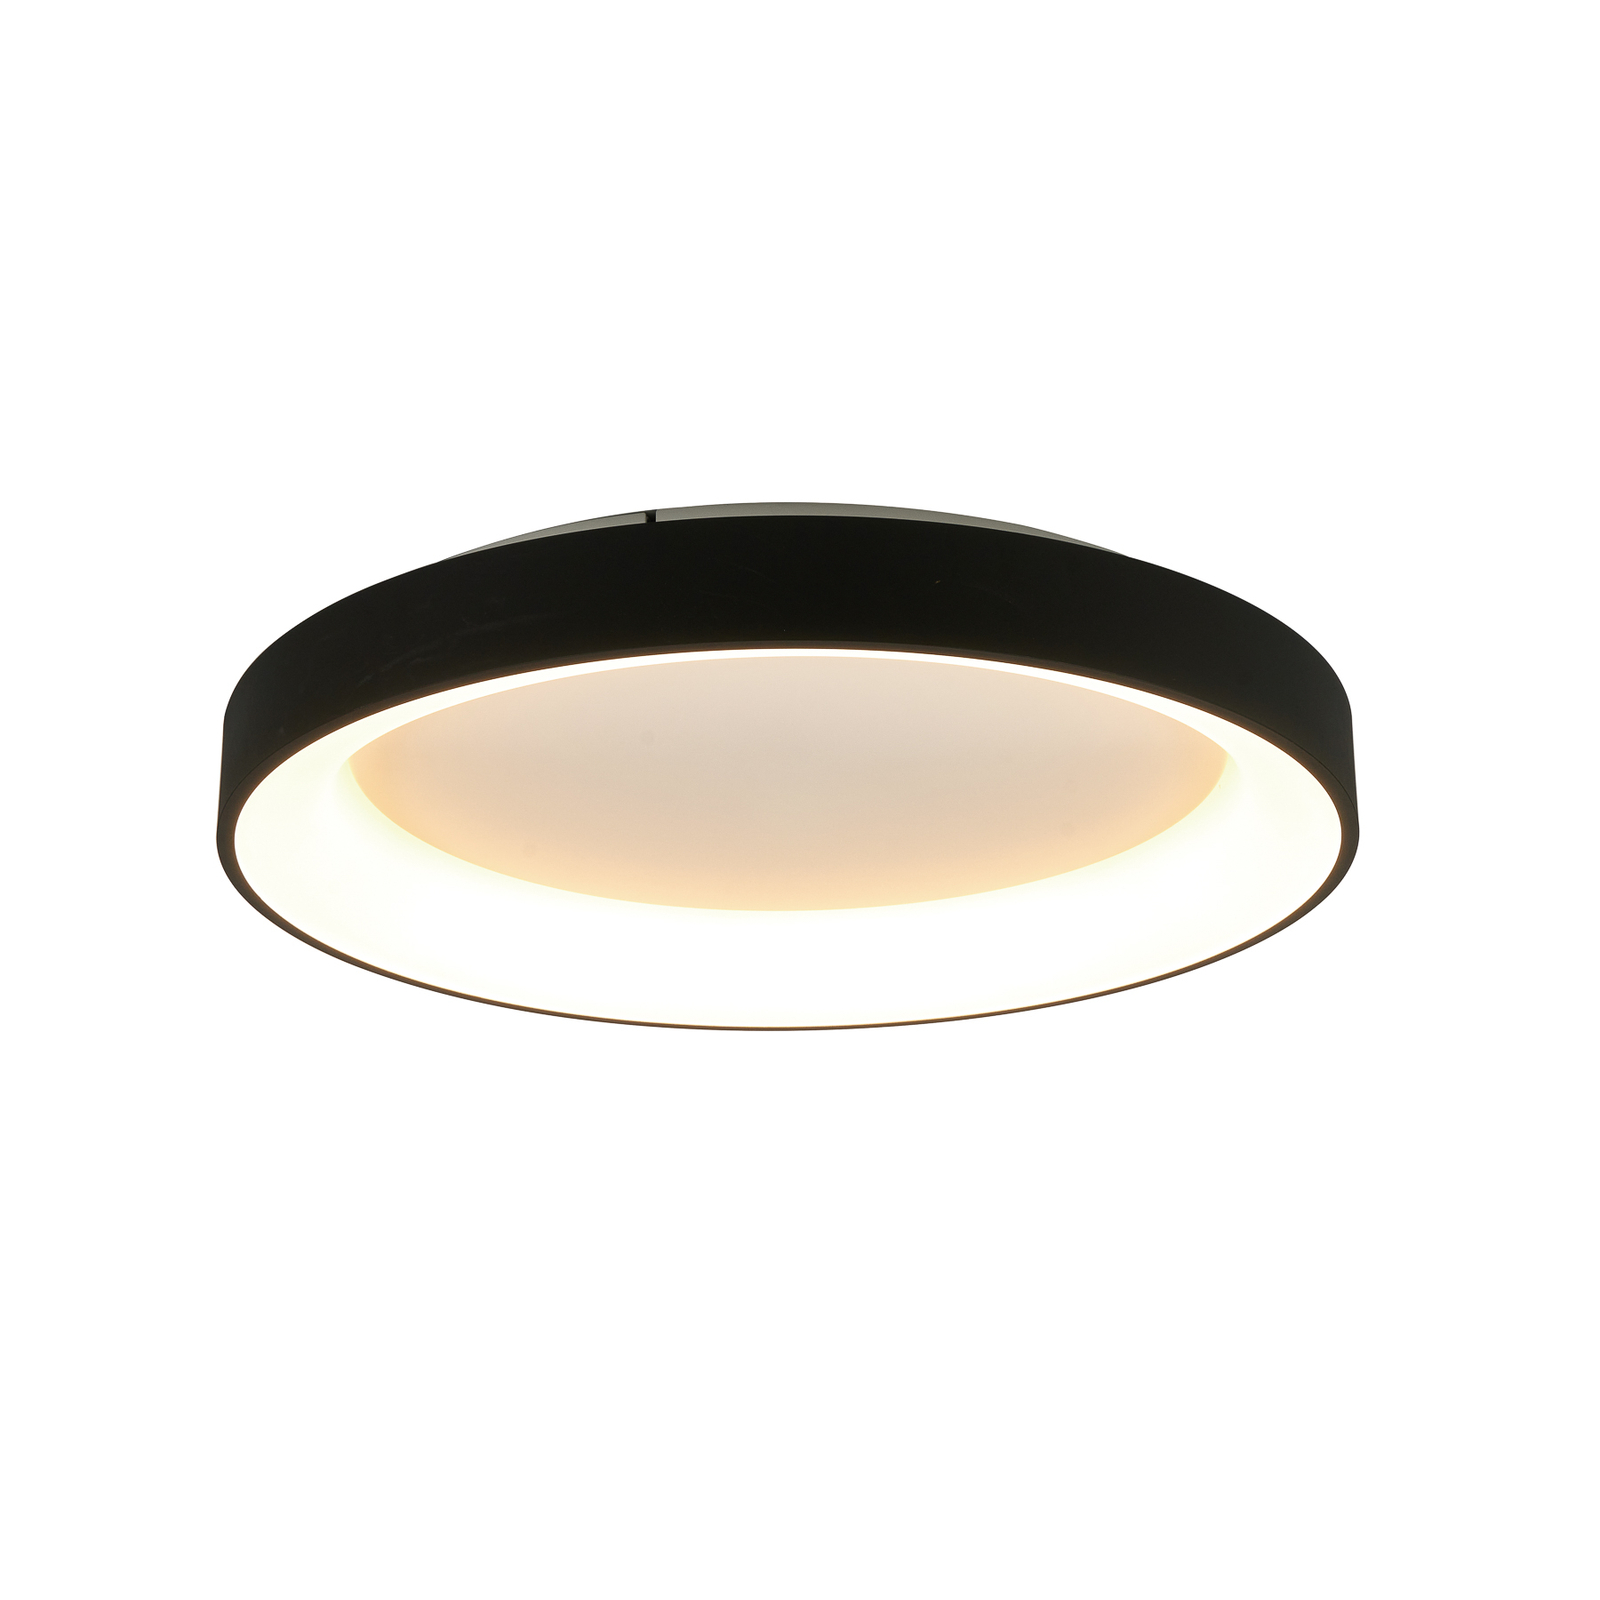 Plafondlamp Niseko II CCT afstandsbediening, Ø 65cm, zwart